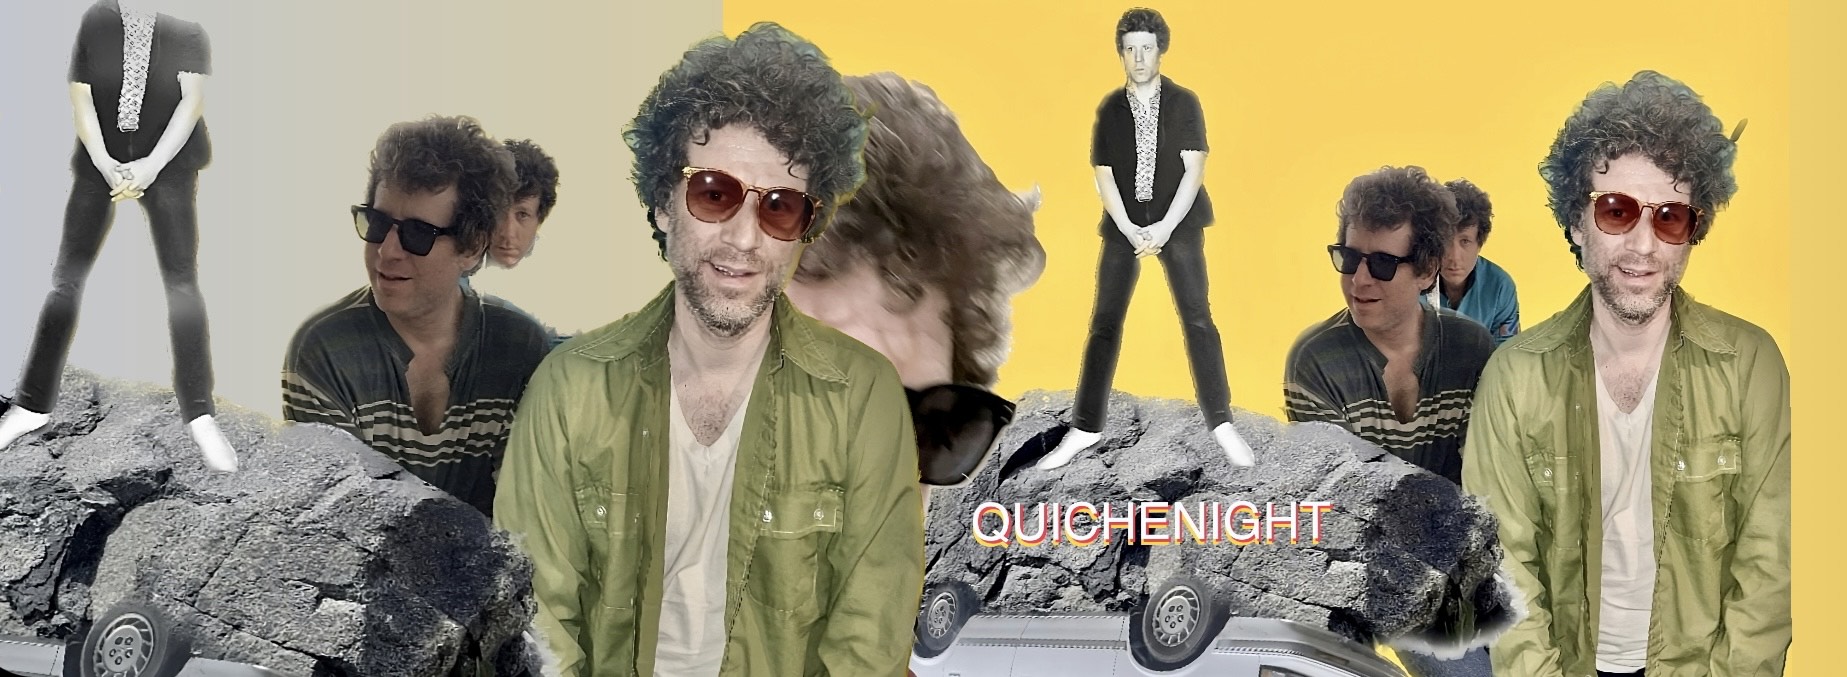 Quichenight Album Cover